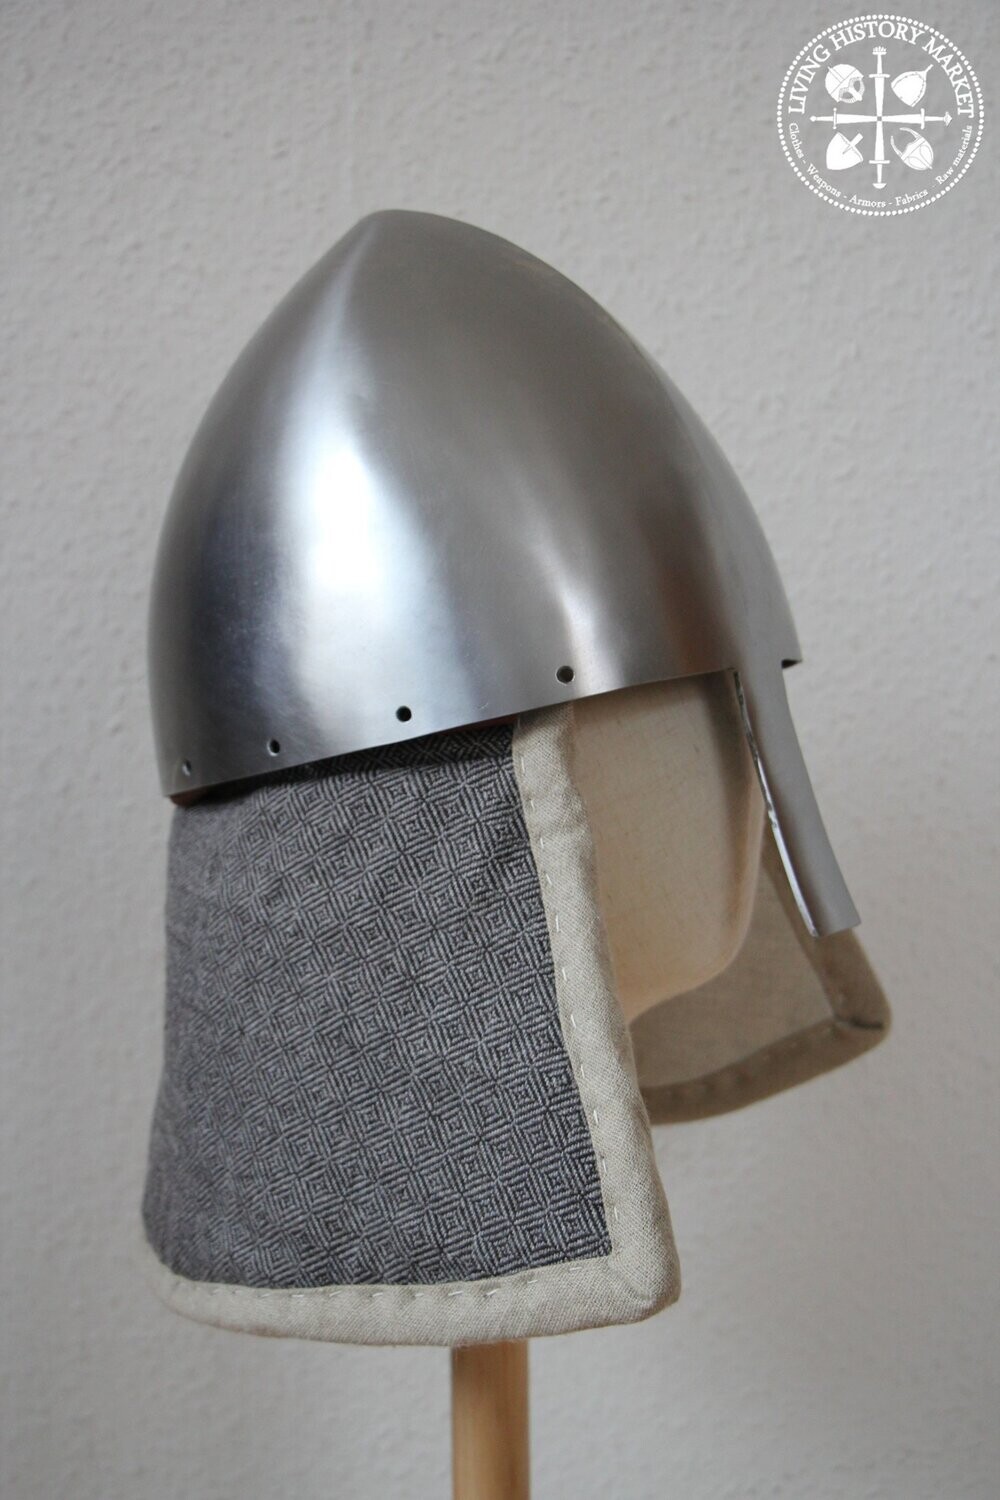 Oskol helmet - 8-10th century